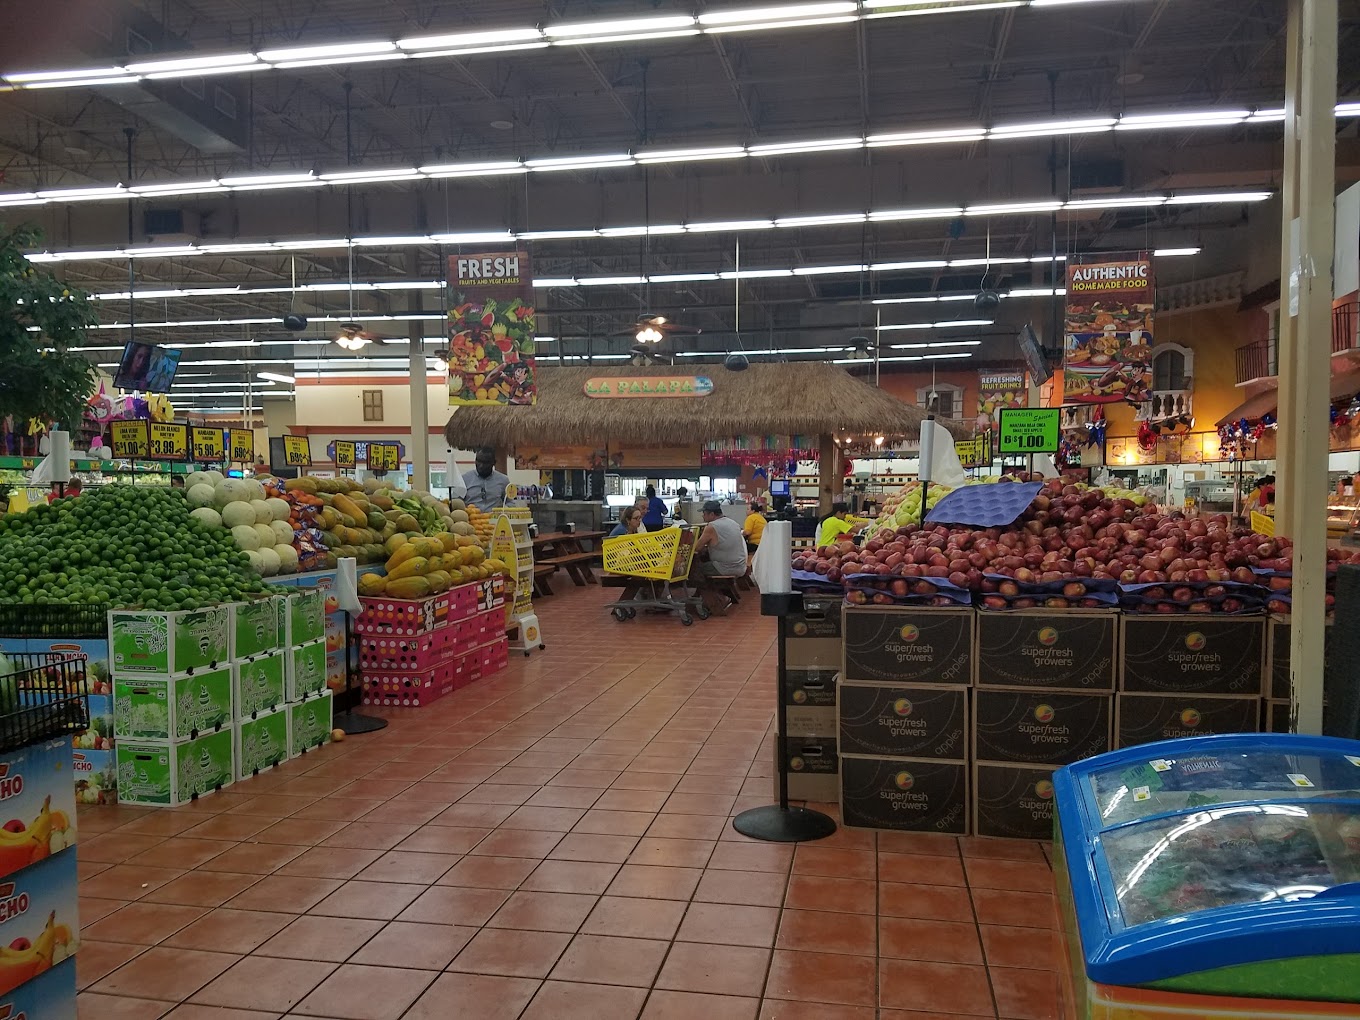 El Rancho Supermercado A Mexican Grocery Store in Dallas